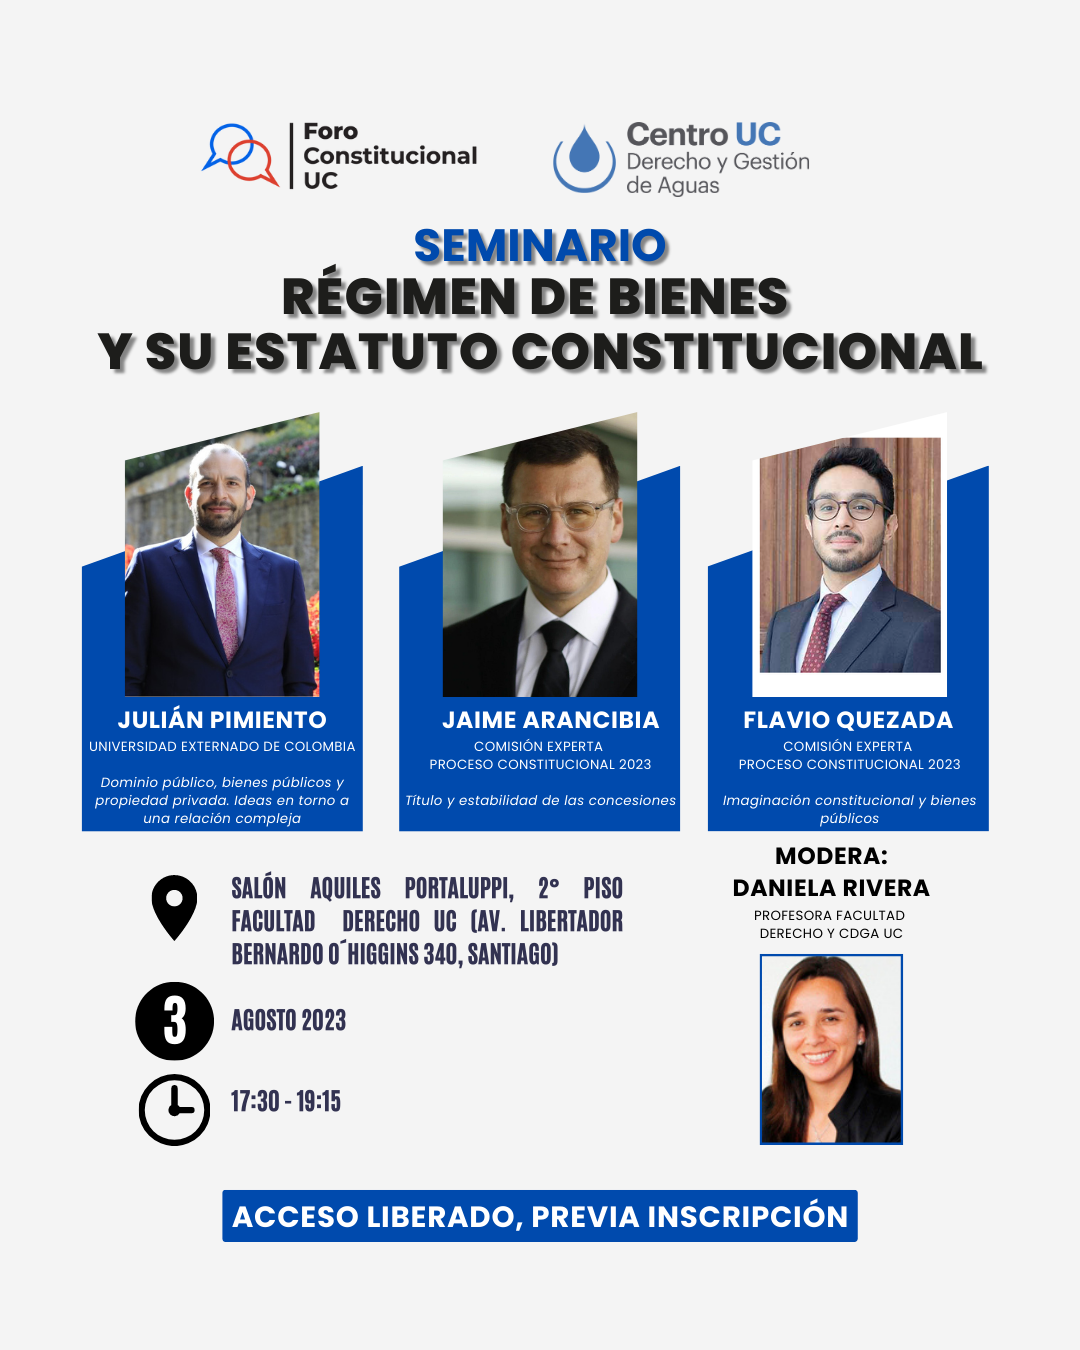 Seminario Foro Constitucional UC-CDGA UC (3agos2023) (1).png